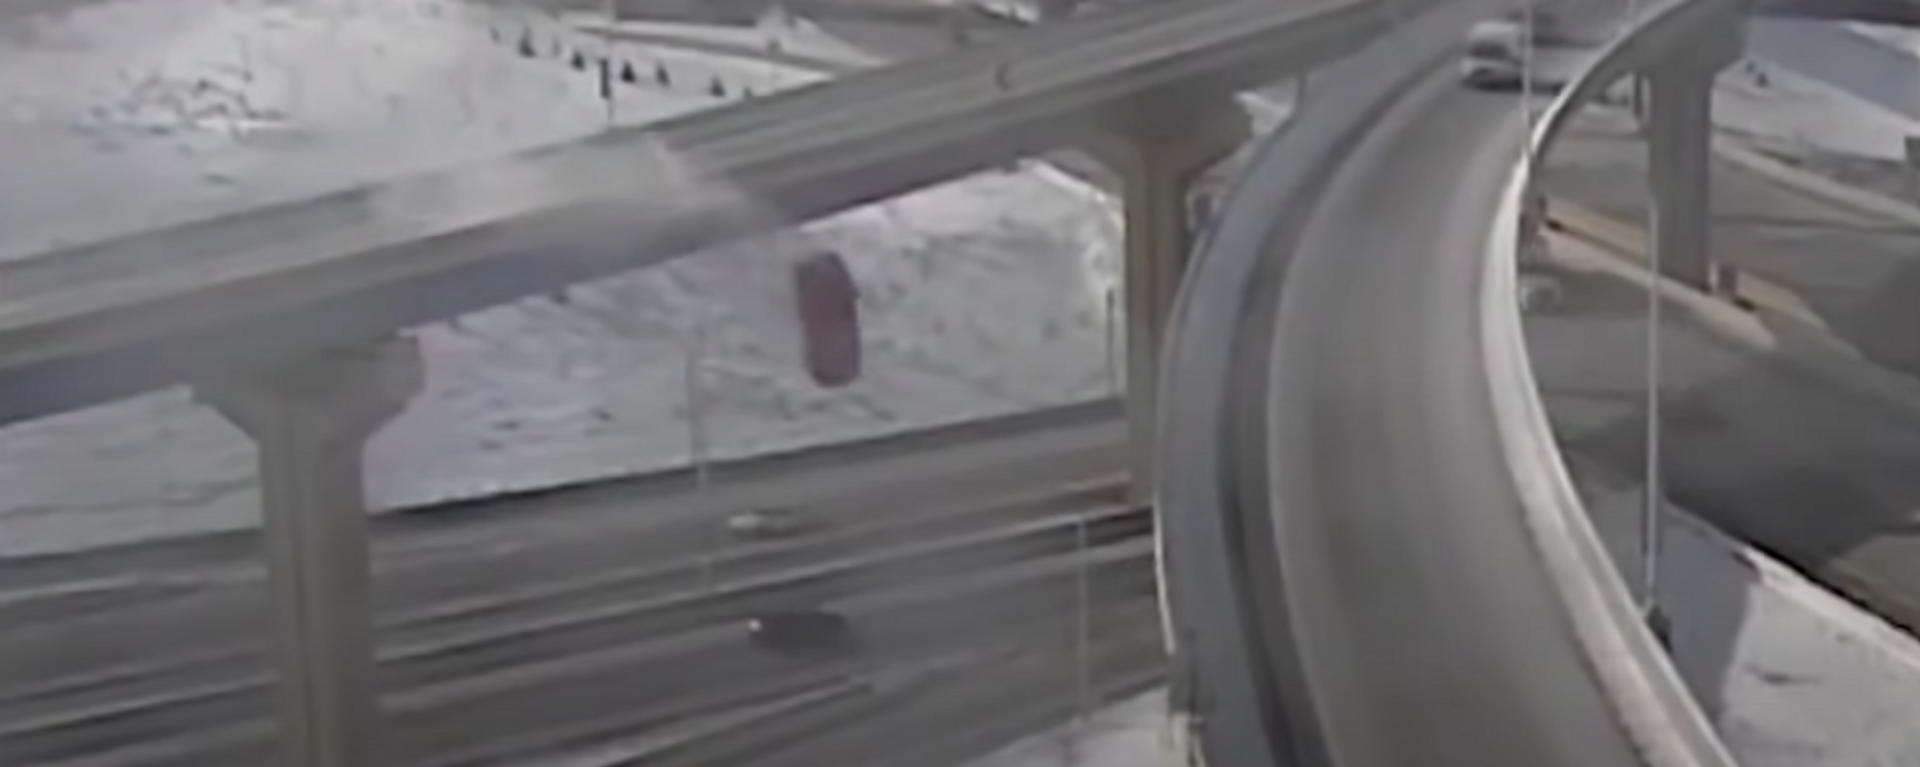 Una camioneta cae desde una altura de 20 metros a una carretera - Sputnik Mundo, 1920, 11.02.2021